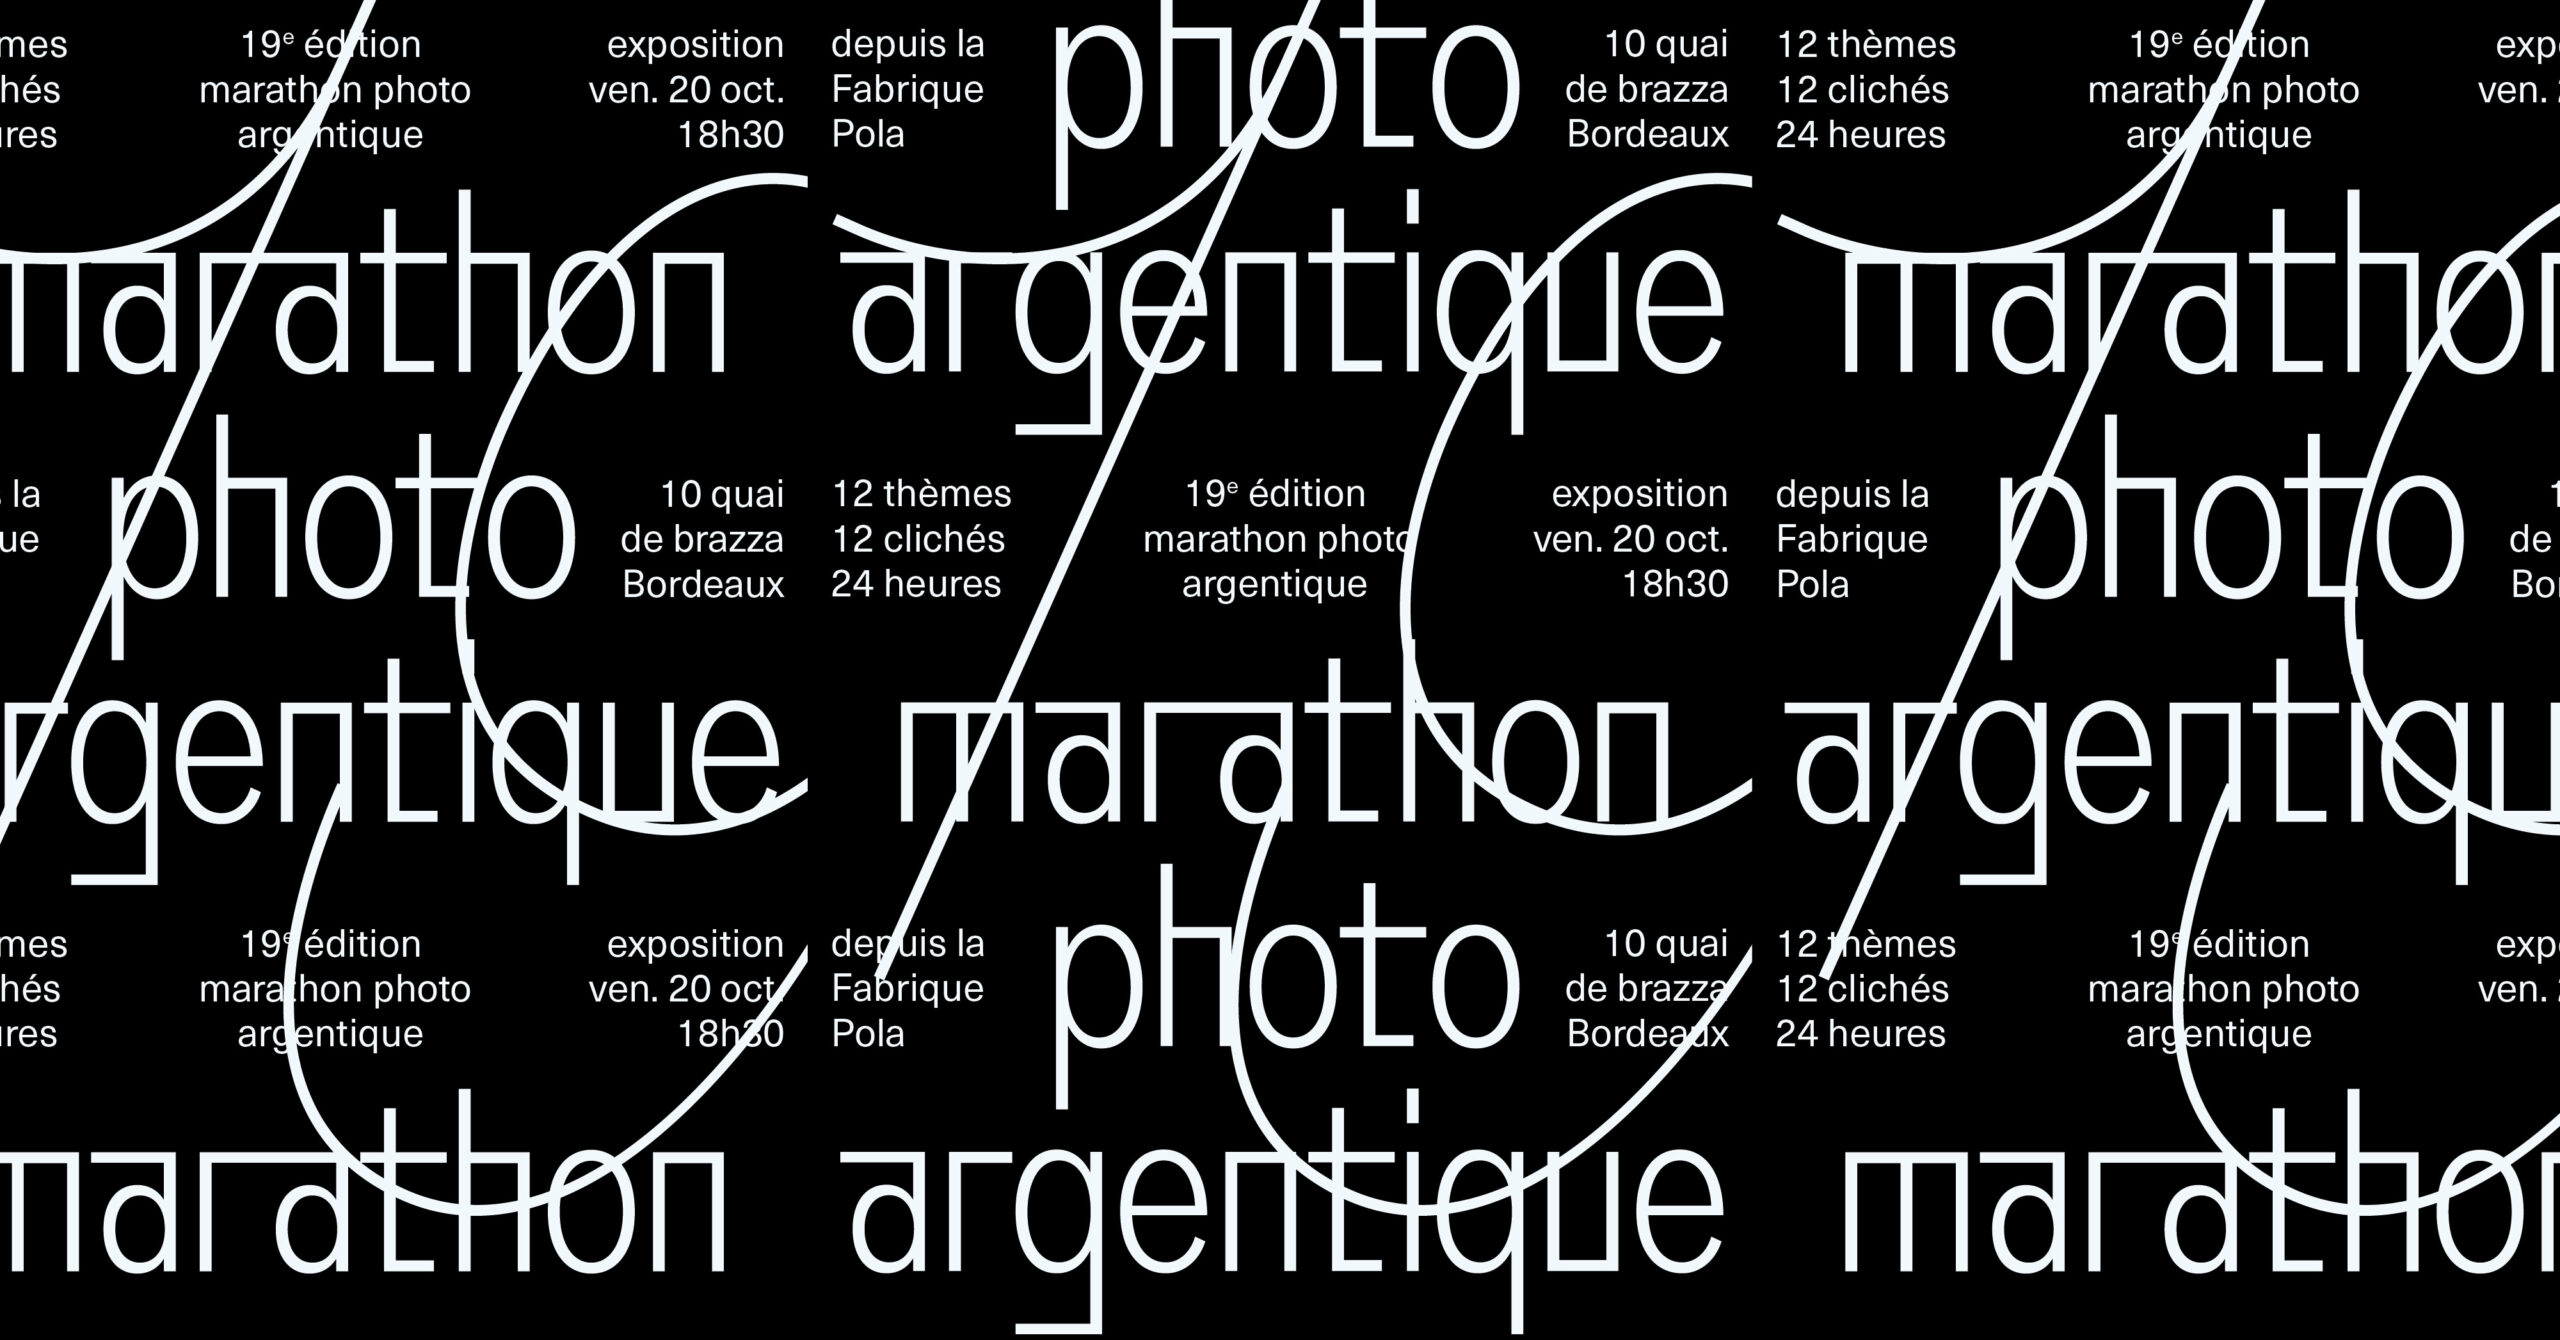 l’exposition • marathon photo argentique